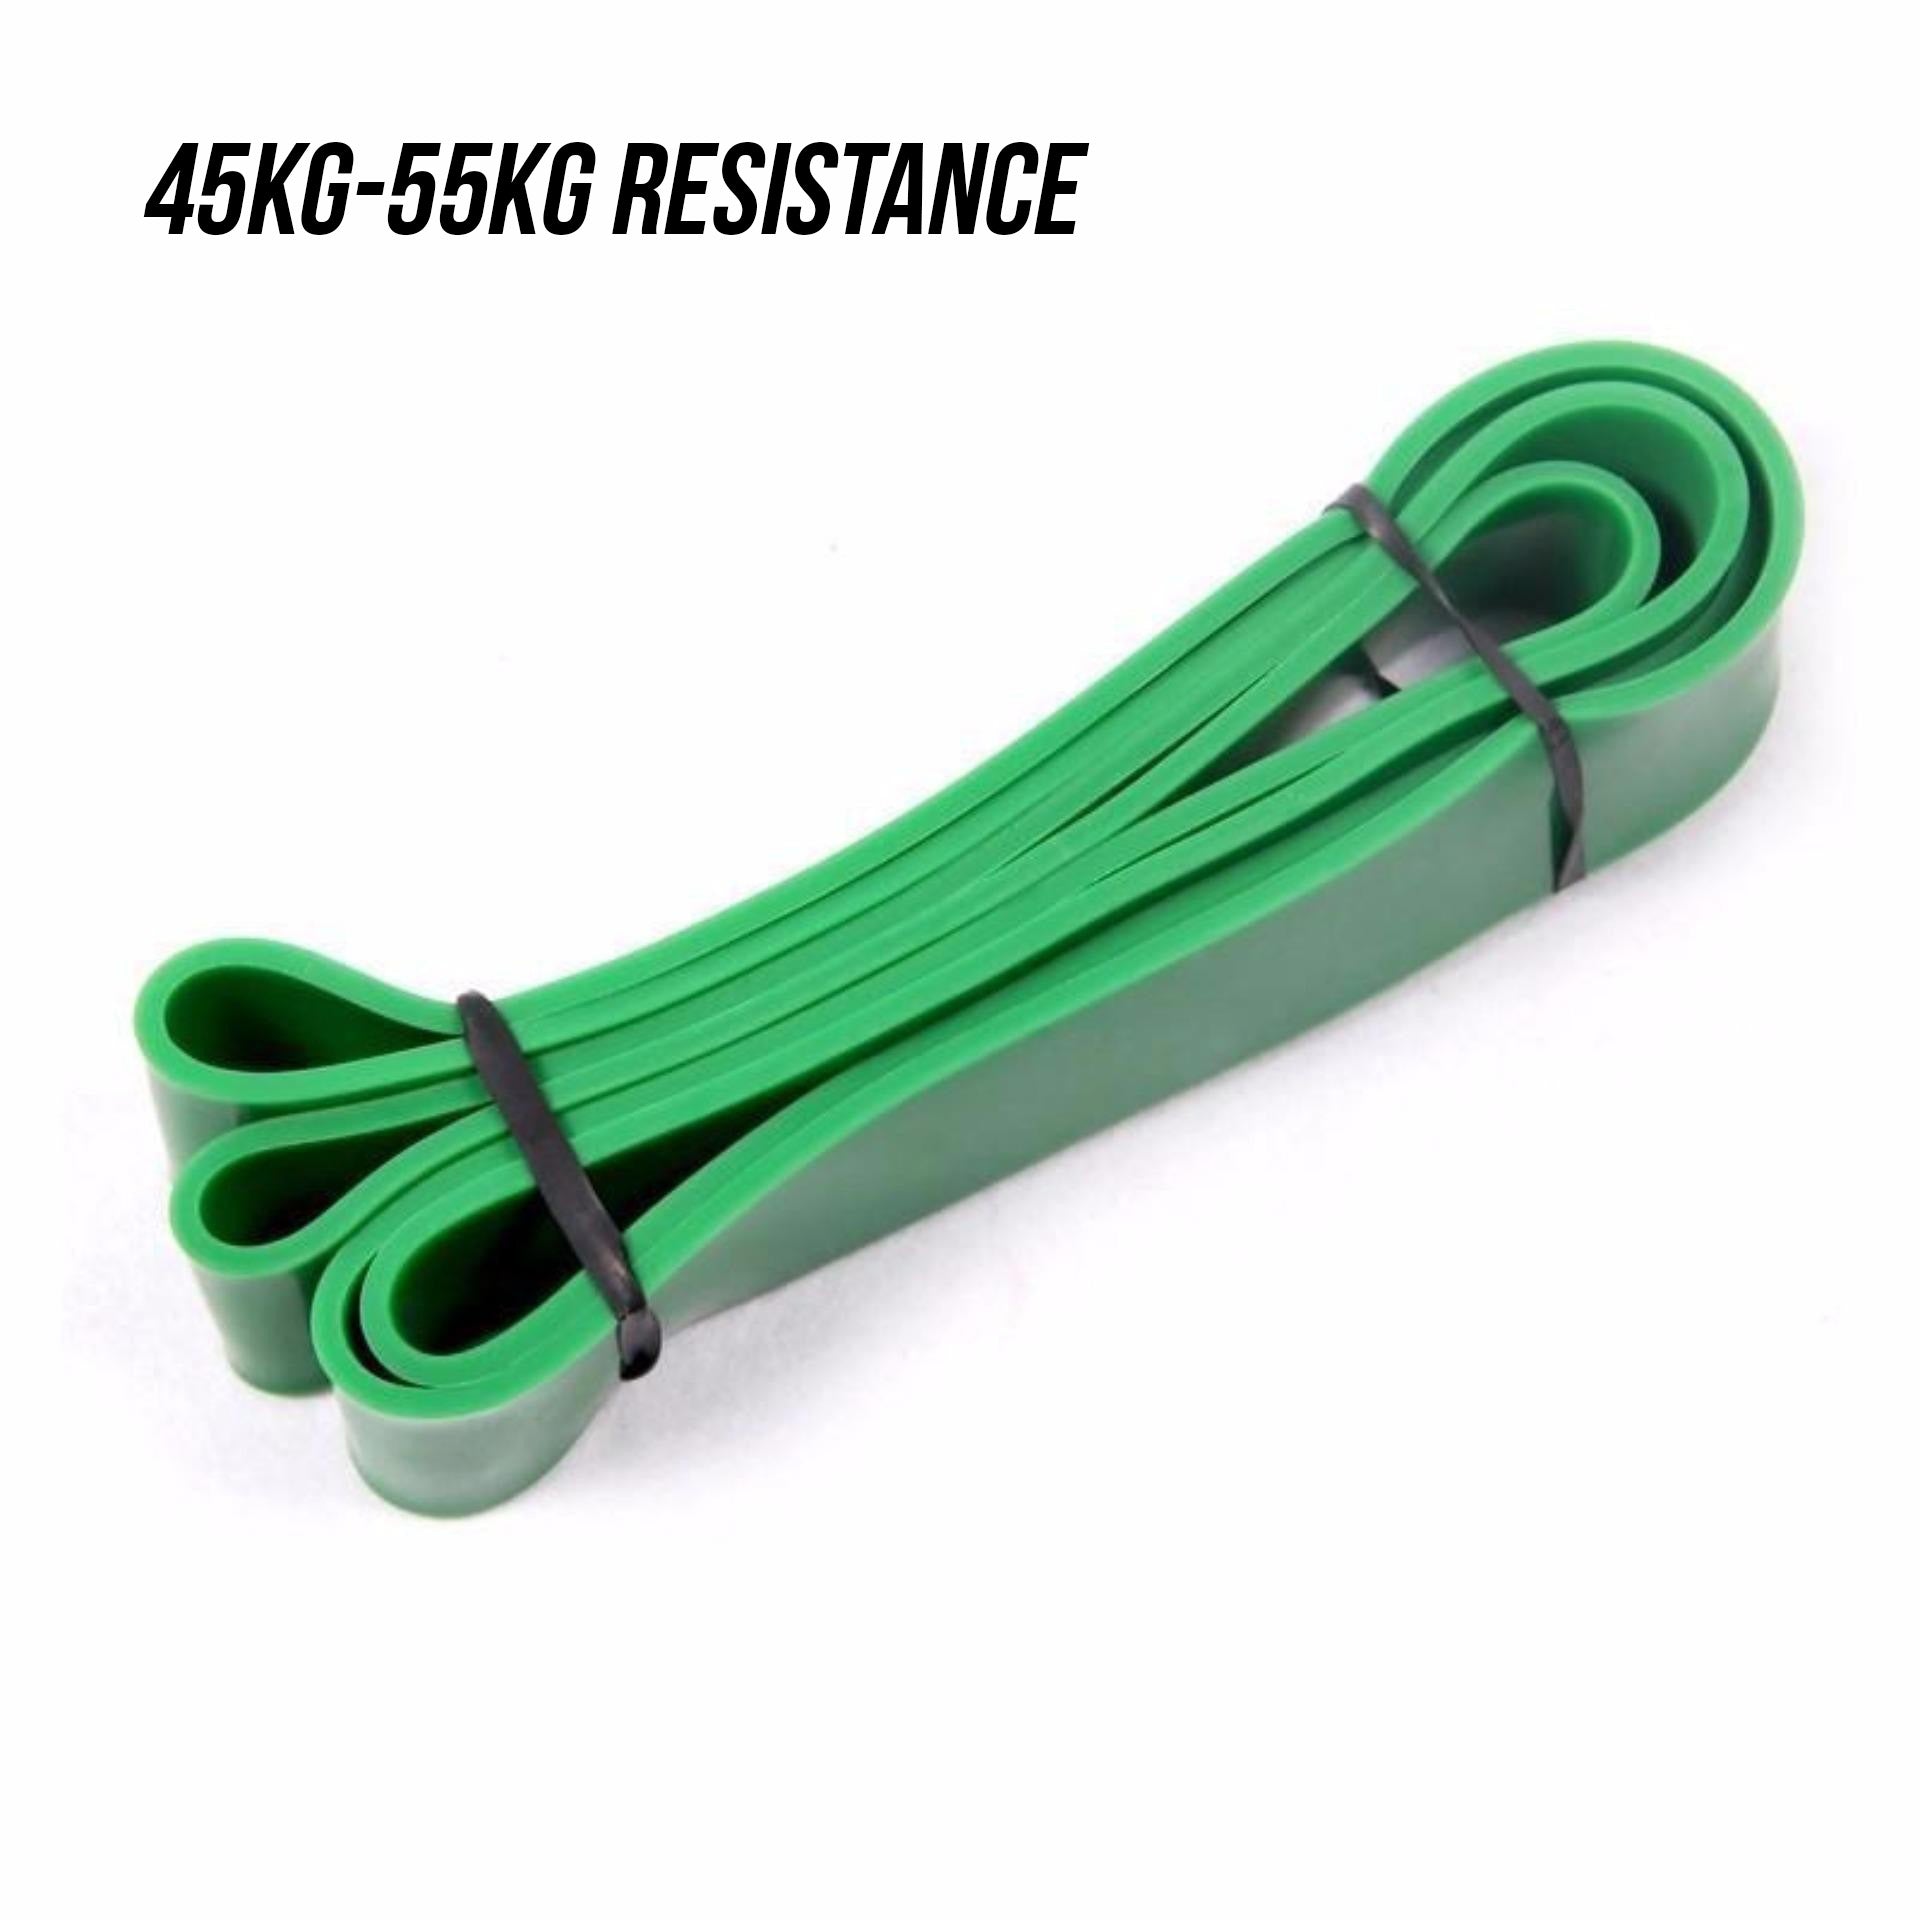 Green Resistance Band (45kg-55kg)